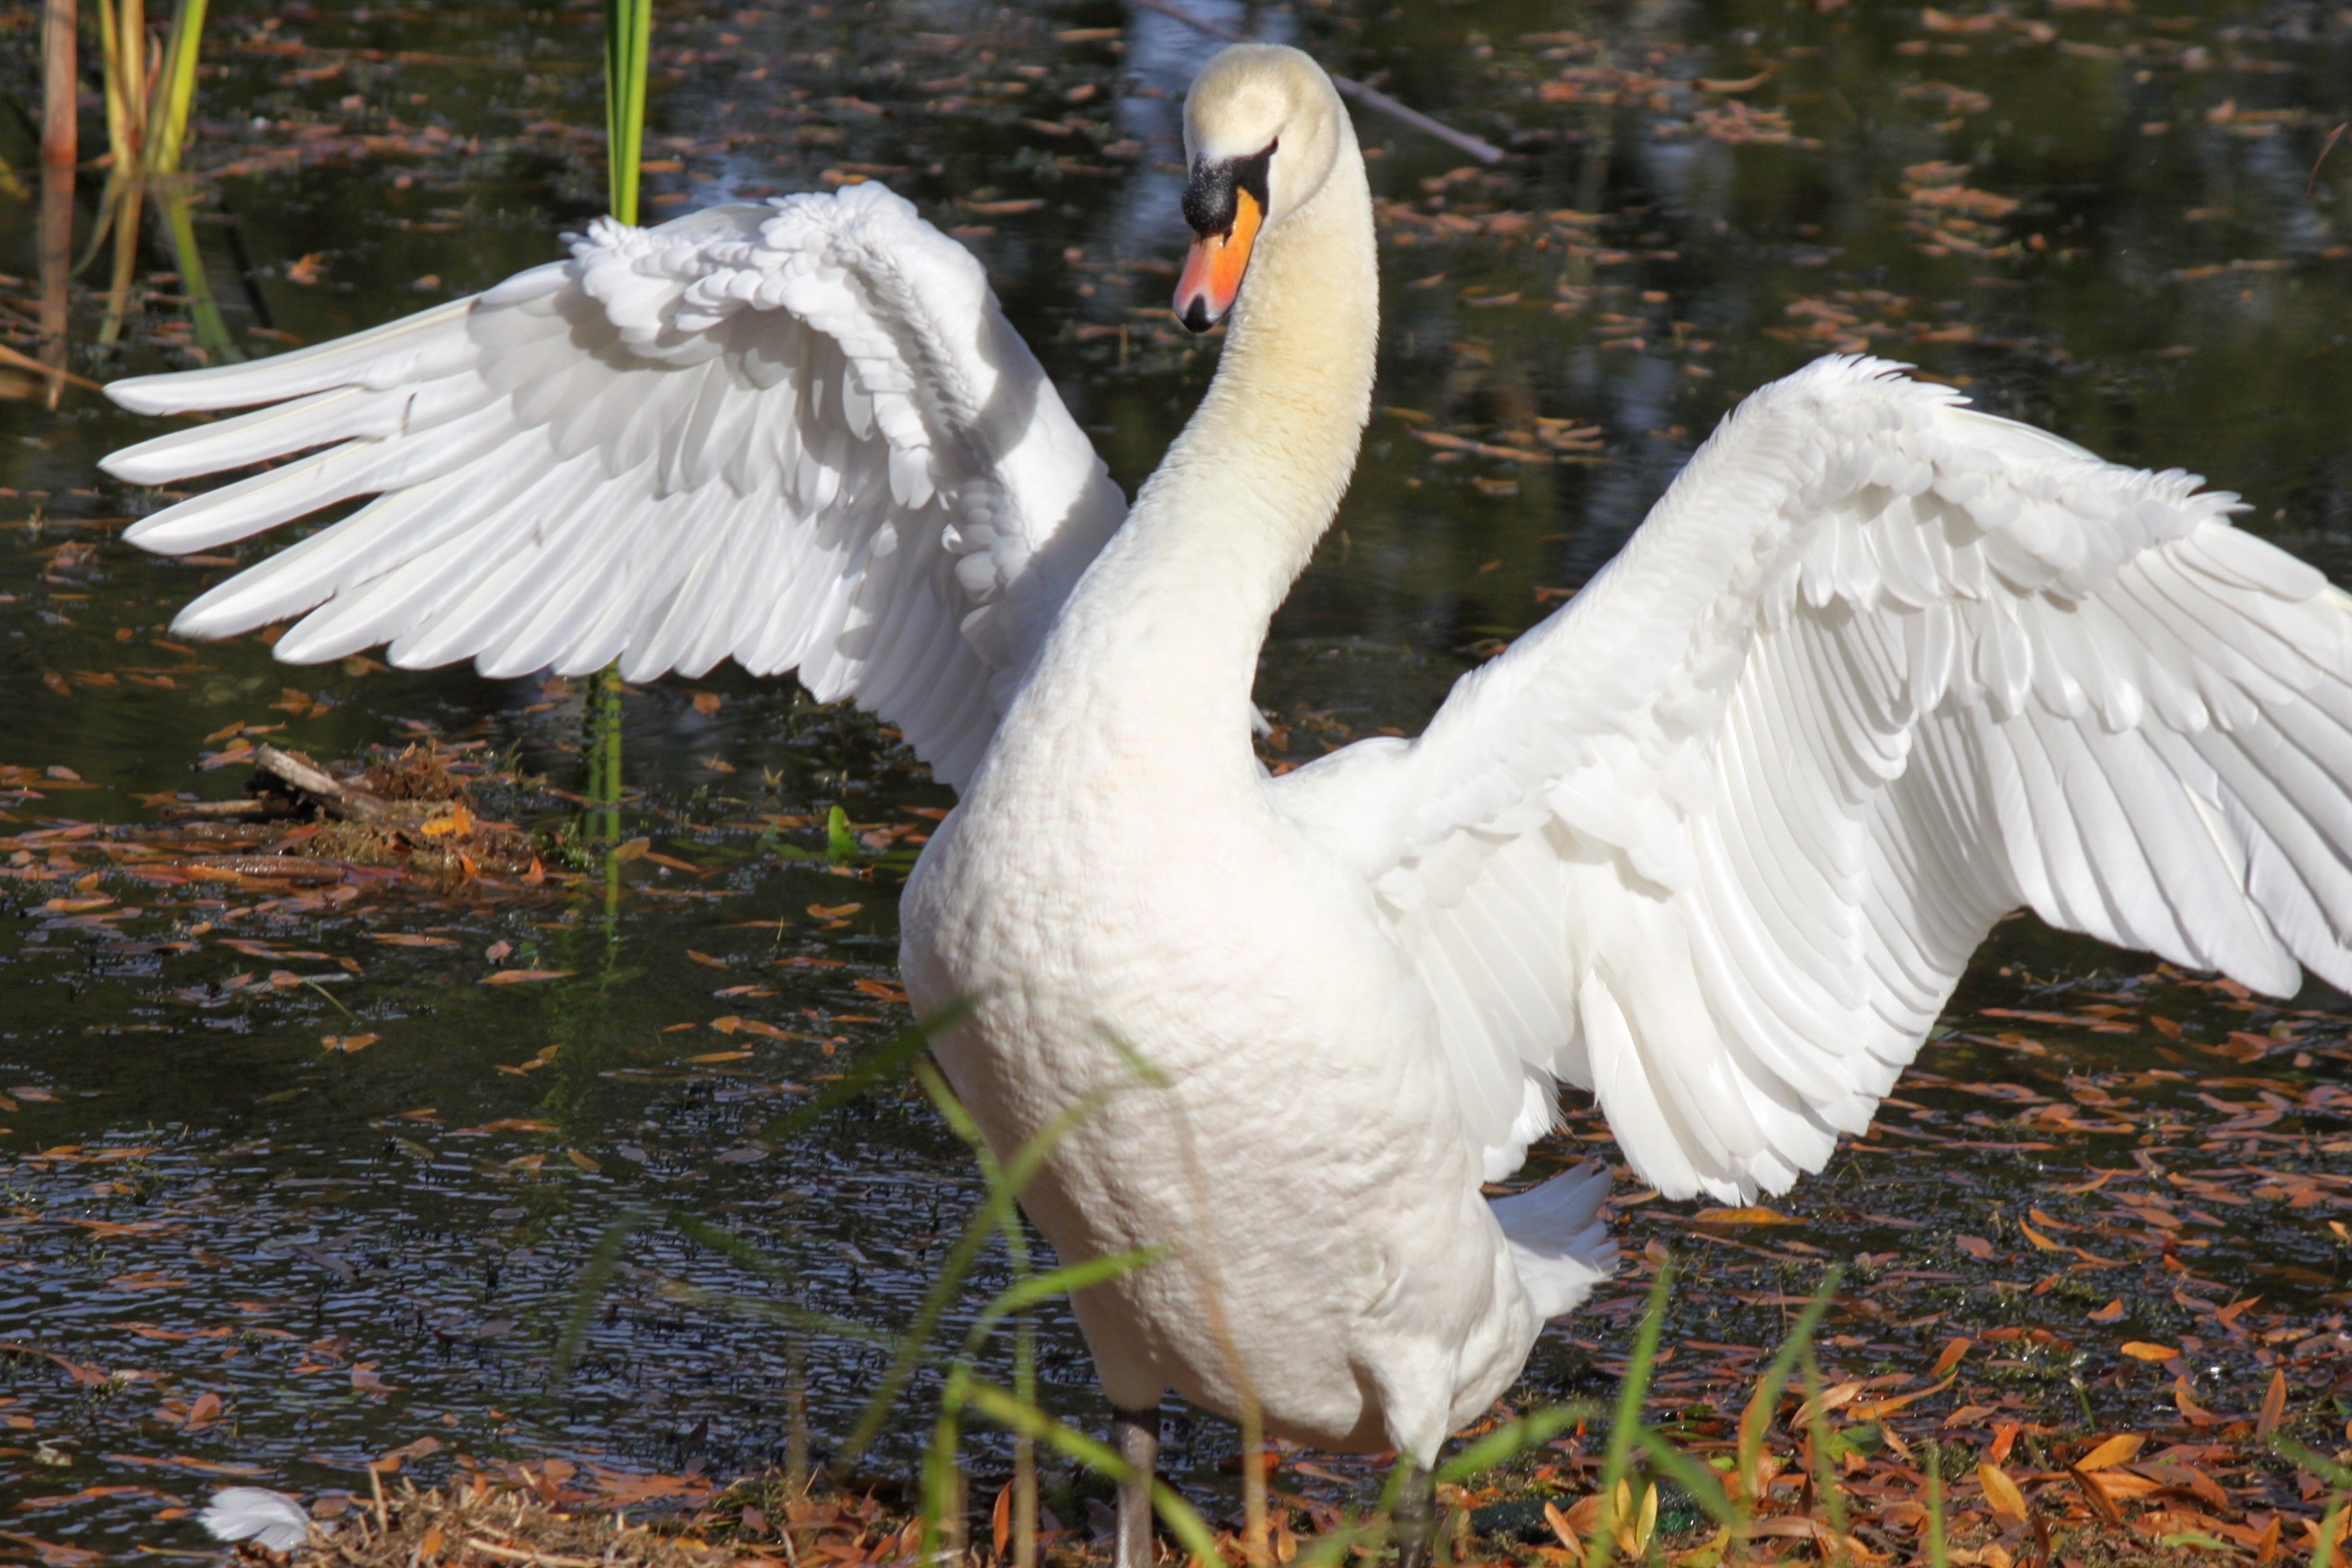 Лебедь, принимающий пластическую позу с расправленными крыльями, придает саду экзотическую атмосферу